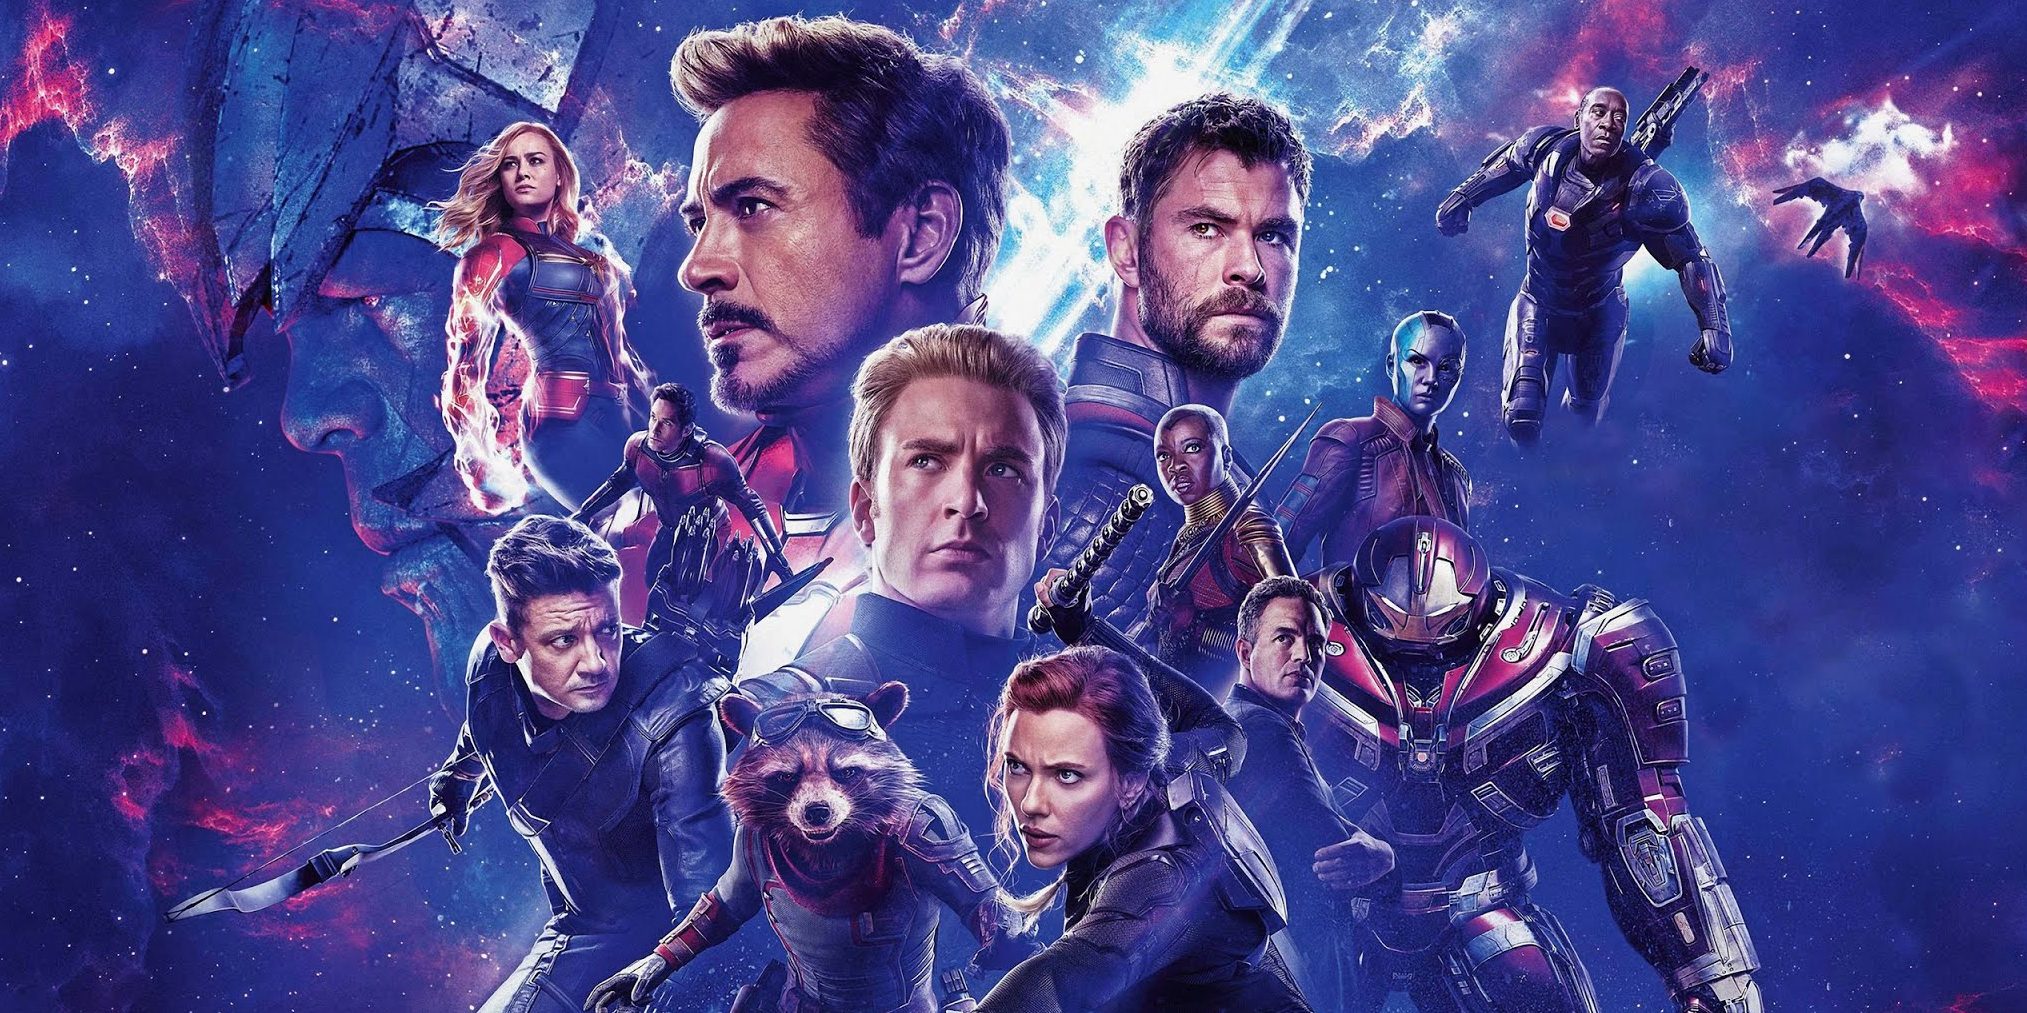 ¡Llegó al podio! Avengers: Endgame es la película más taquillera de la historia